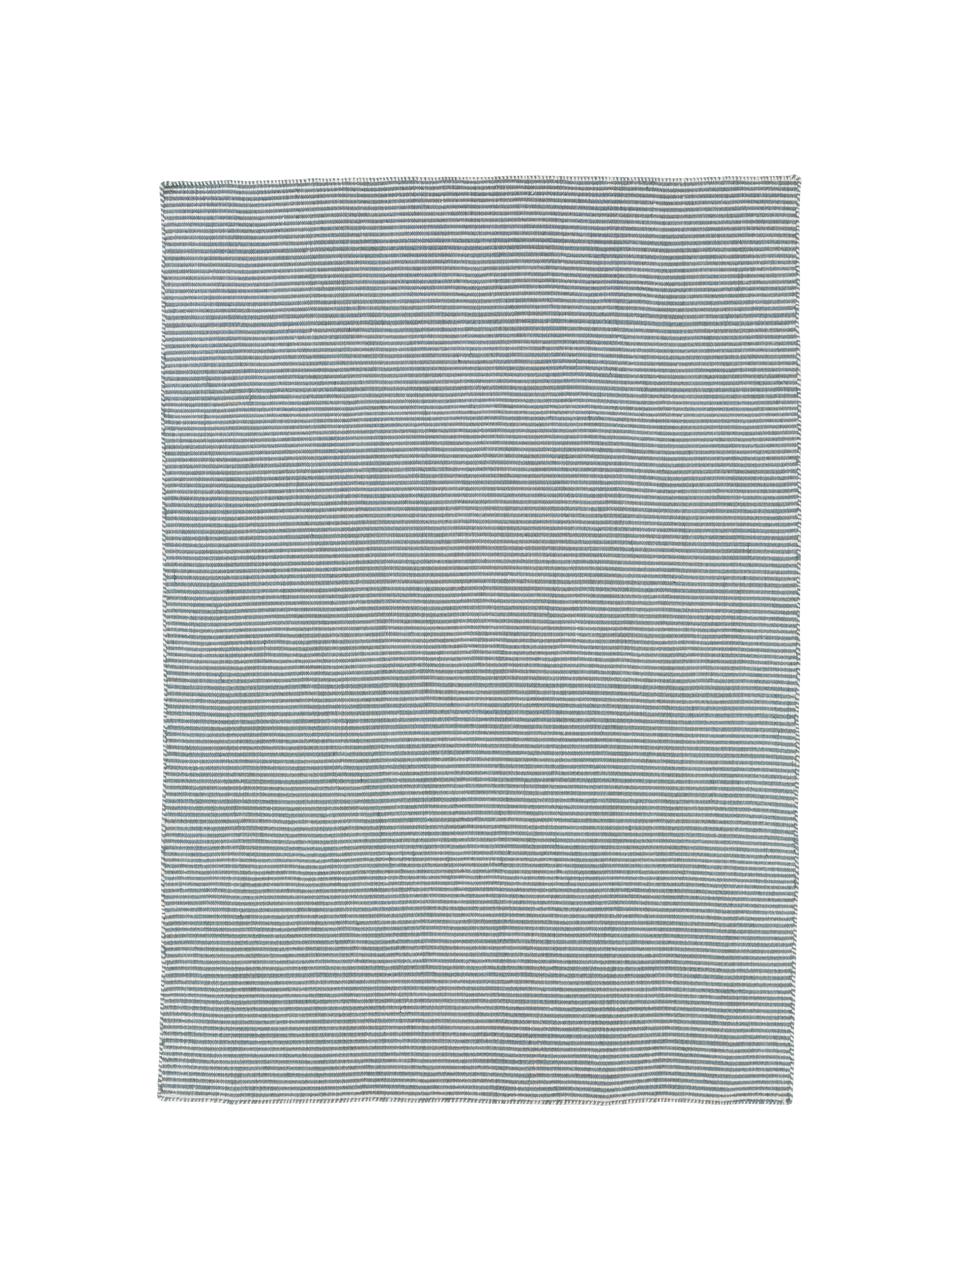 Fein gestreifter Wollteppich Ajo in Blau-Creme, handgewebt, Graublau, Creme, B 200 x L 300 cm (Grösse L)